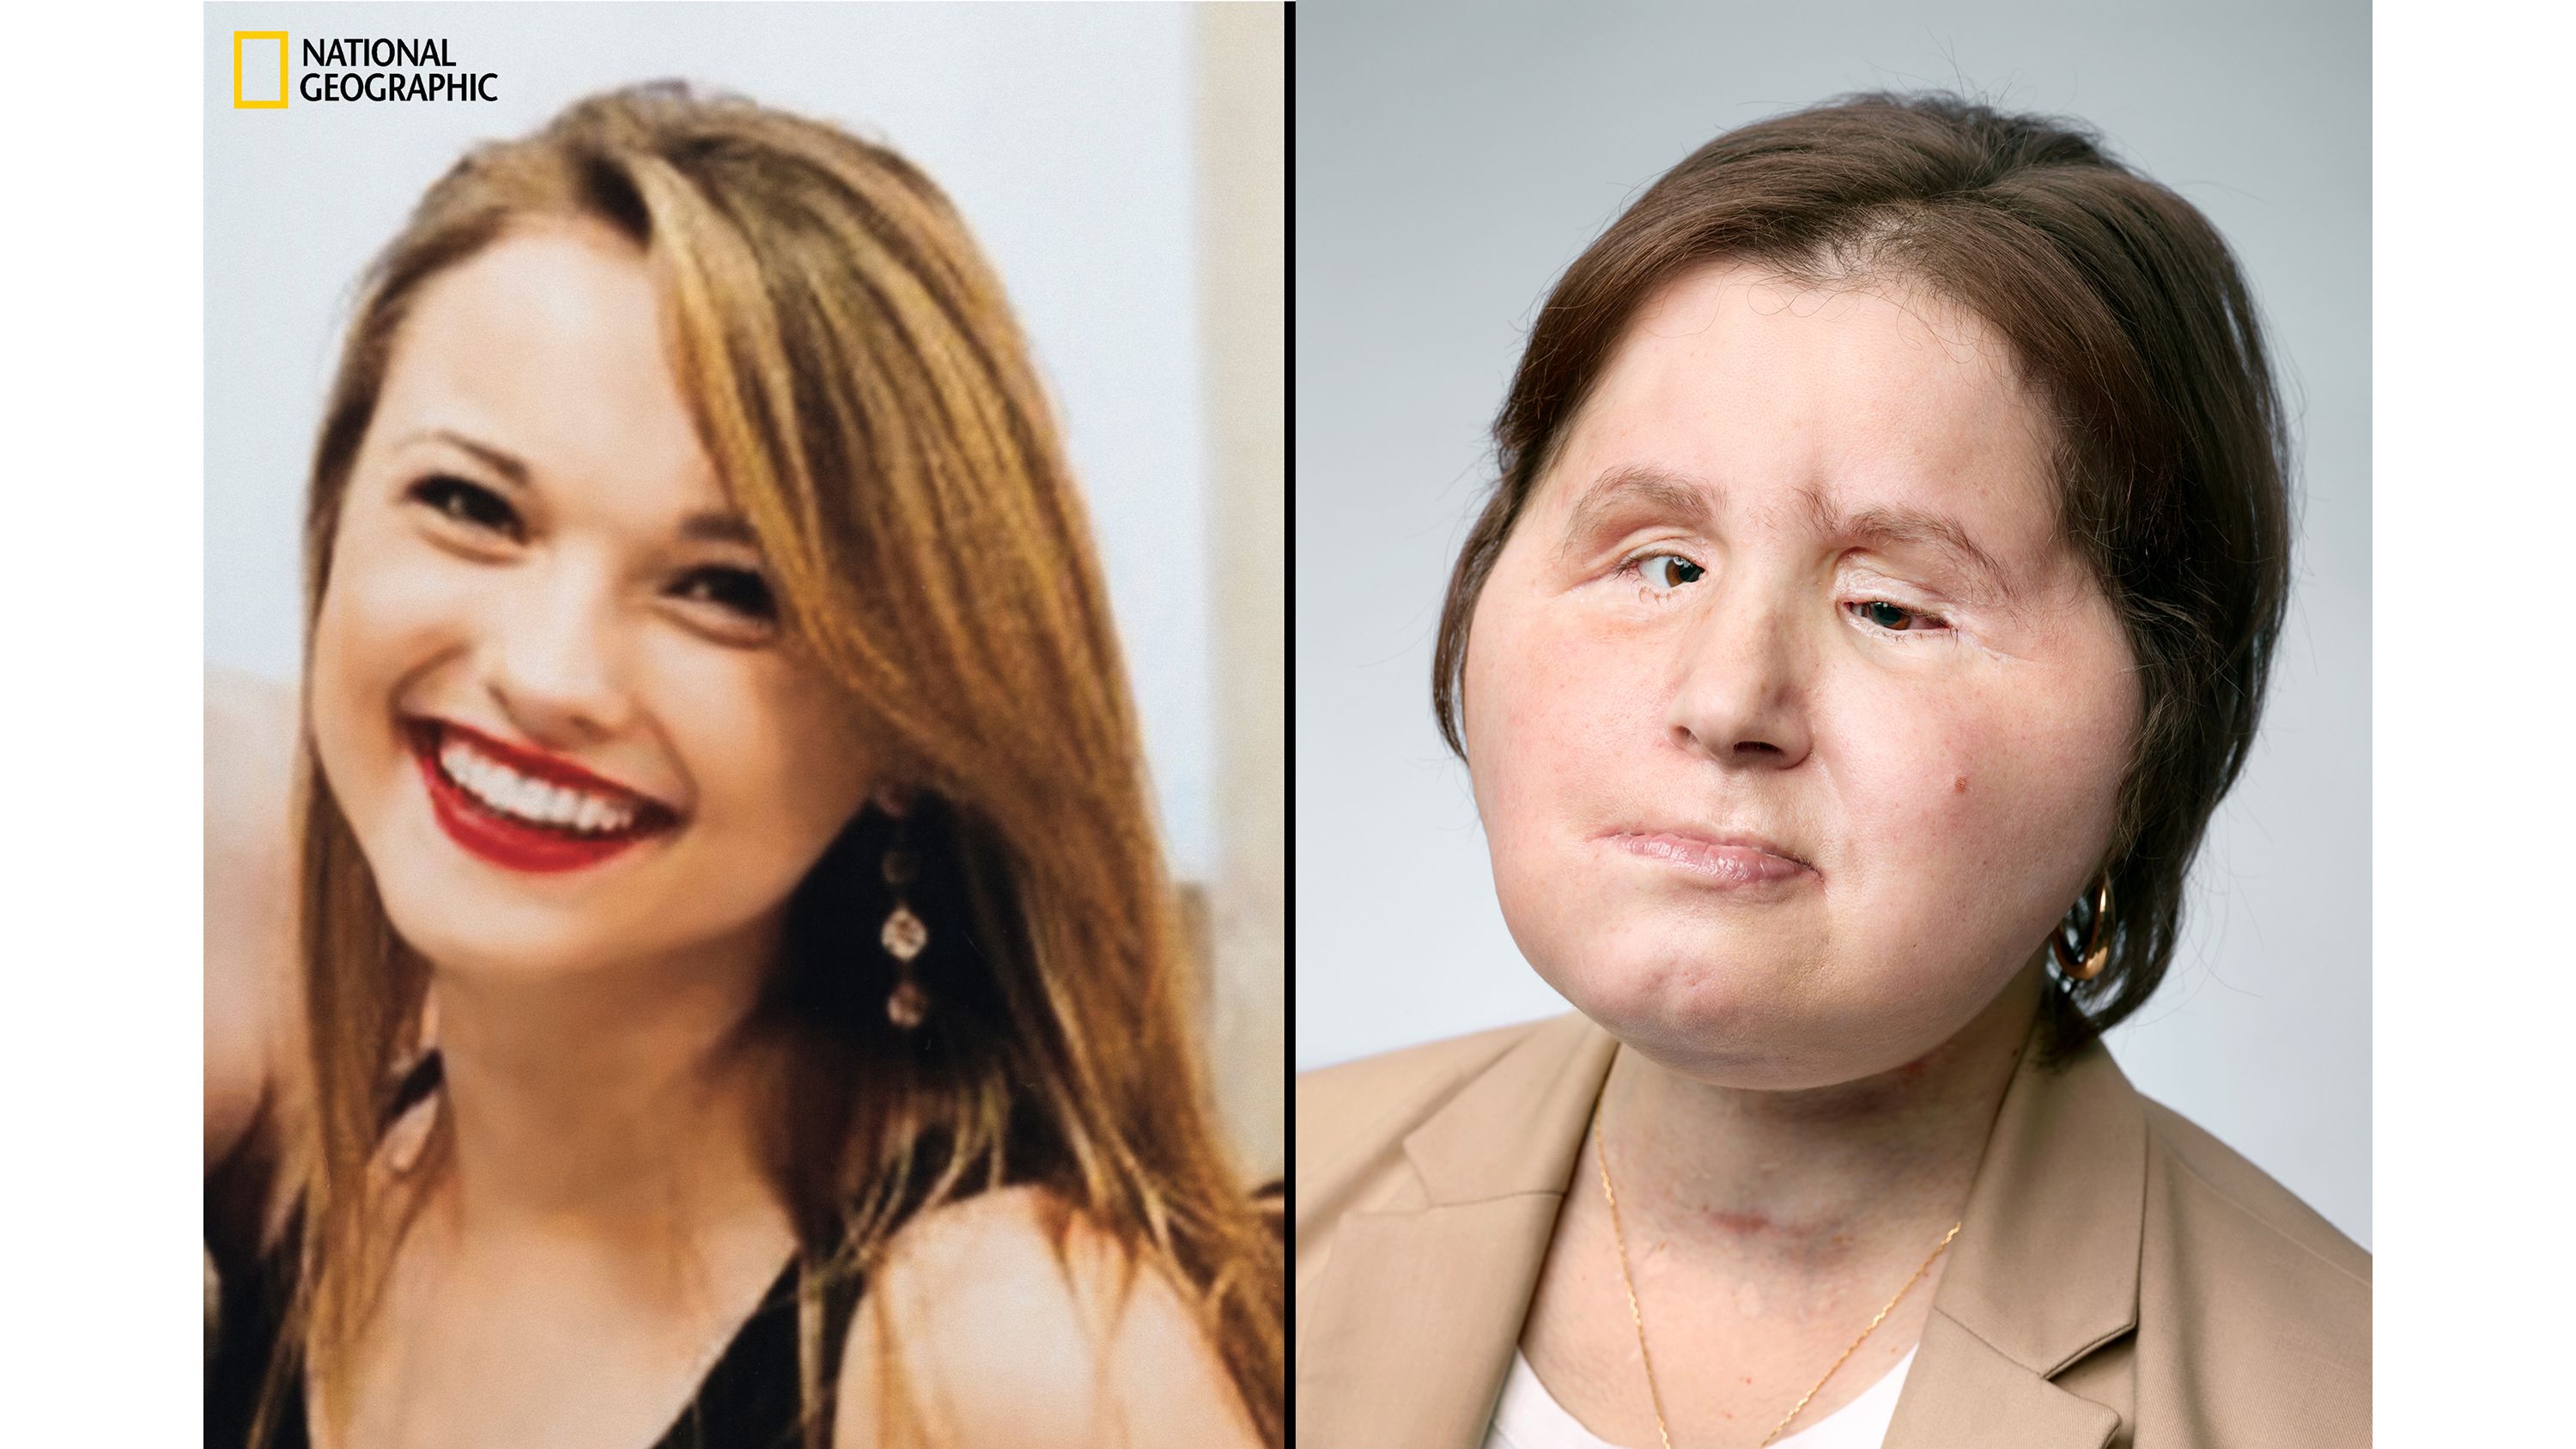 3000px x 1687px - Katie Stubblefield: Face transplant gives suicide survivor a 'second  chance' | CNN